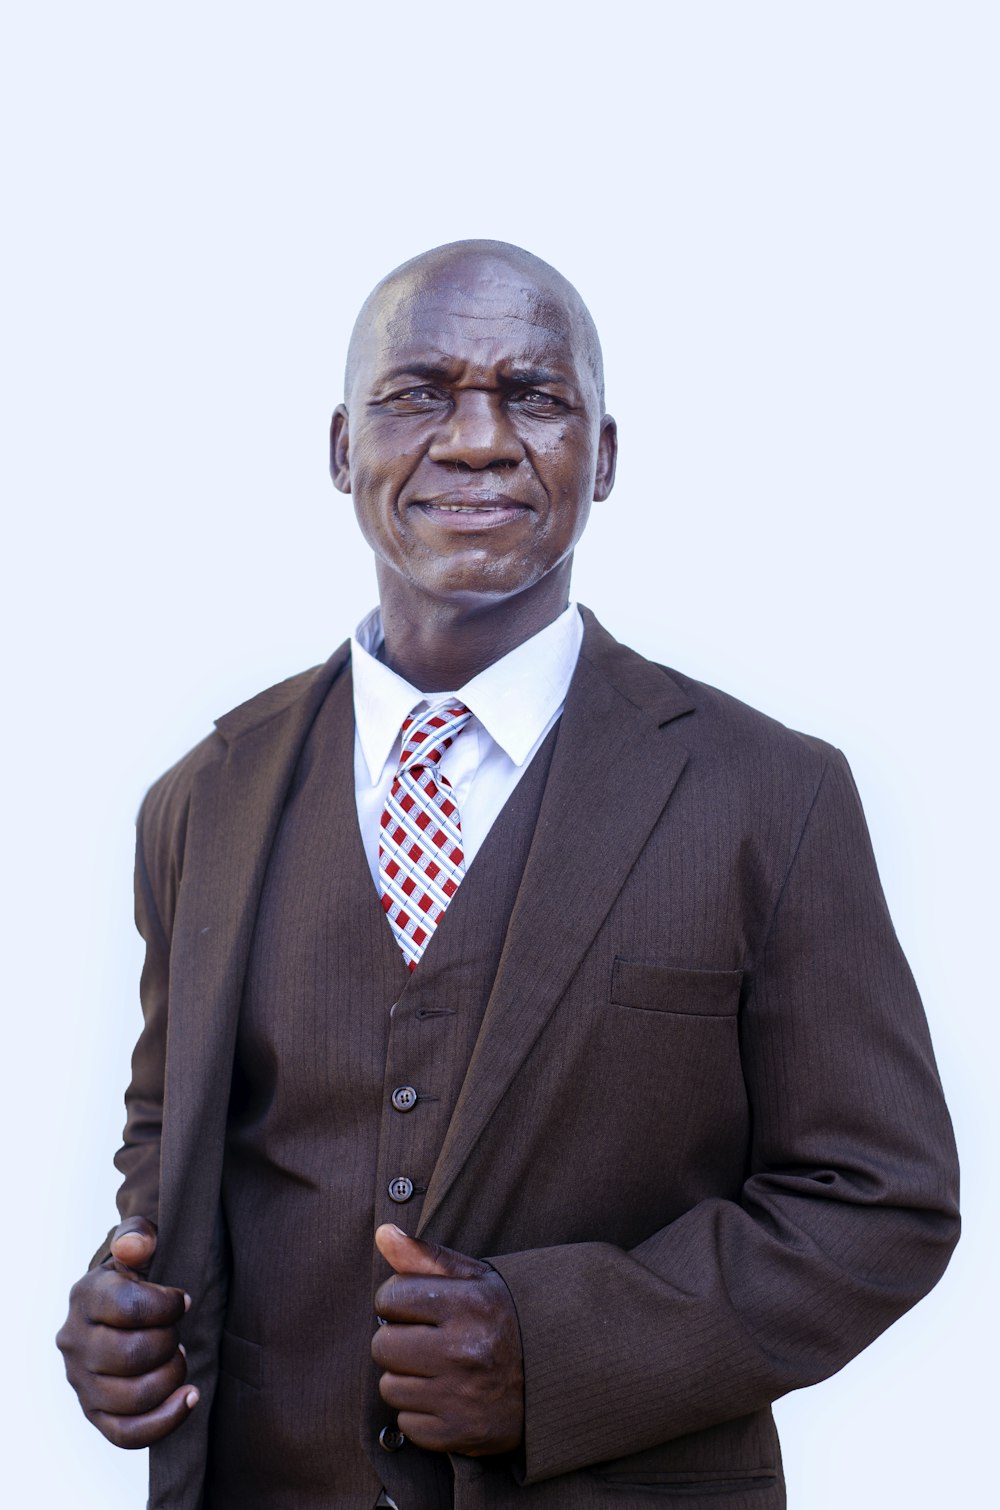 Un homme en costume et cravate posant pour une photo